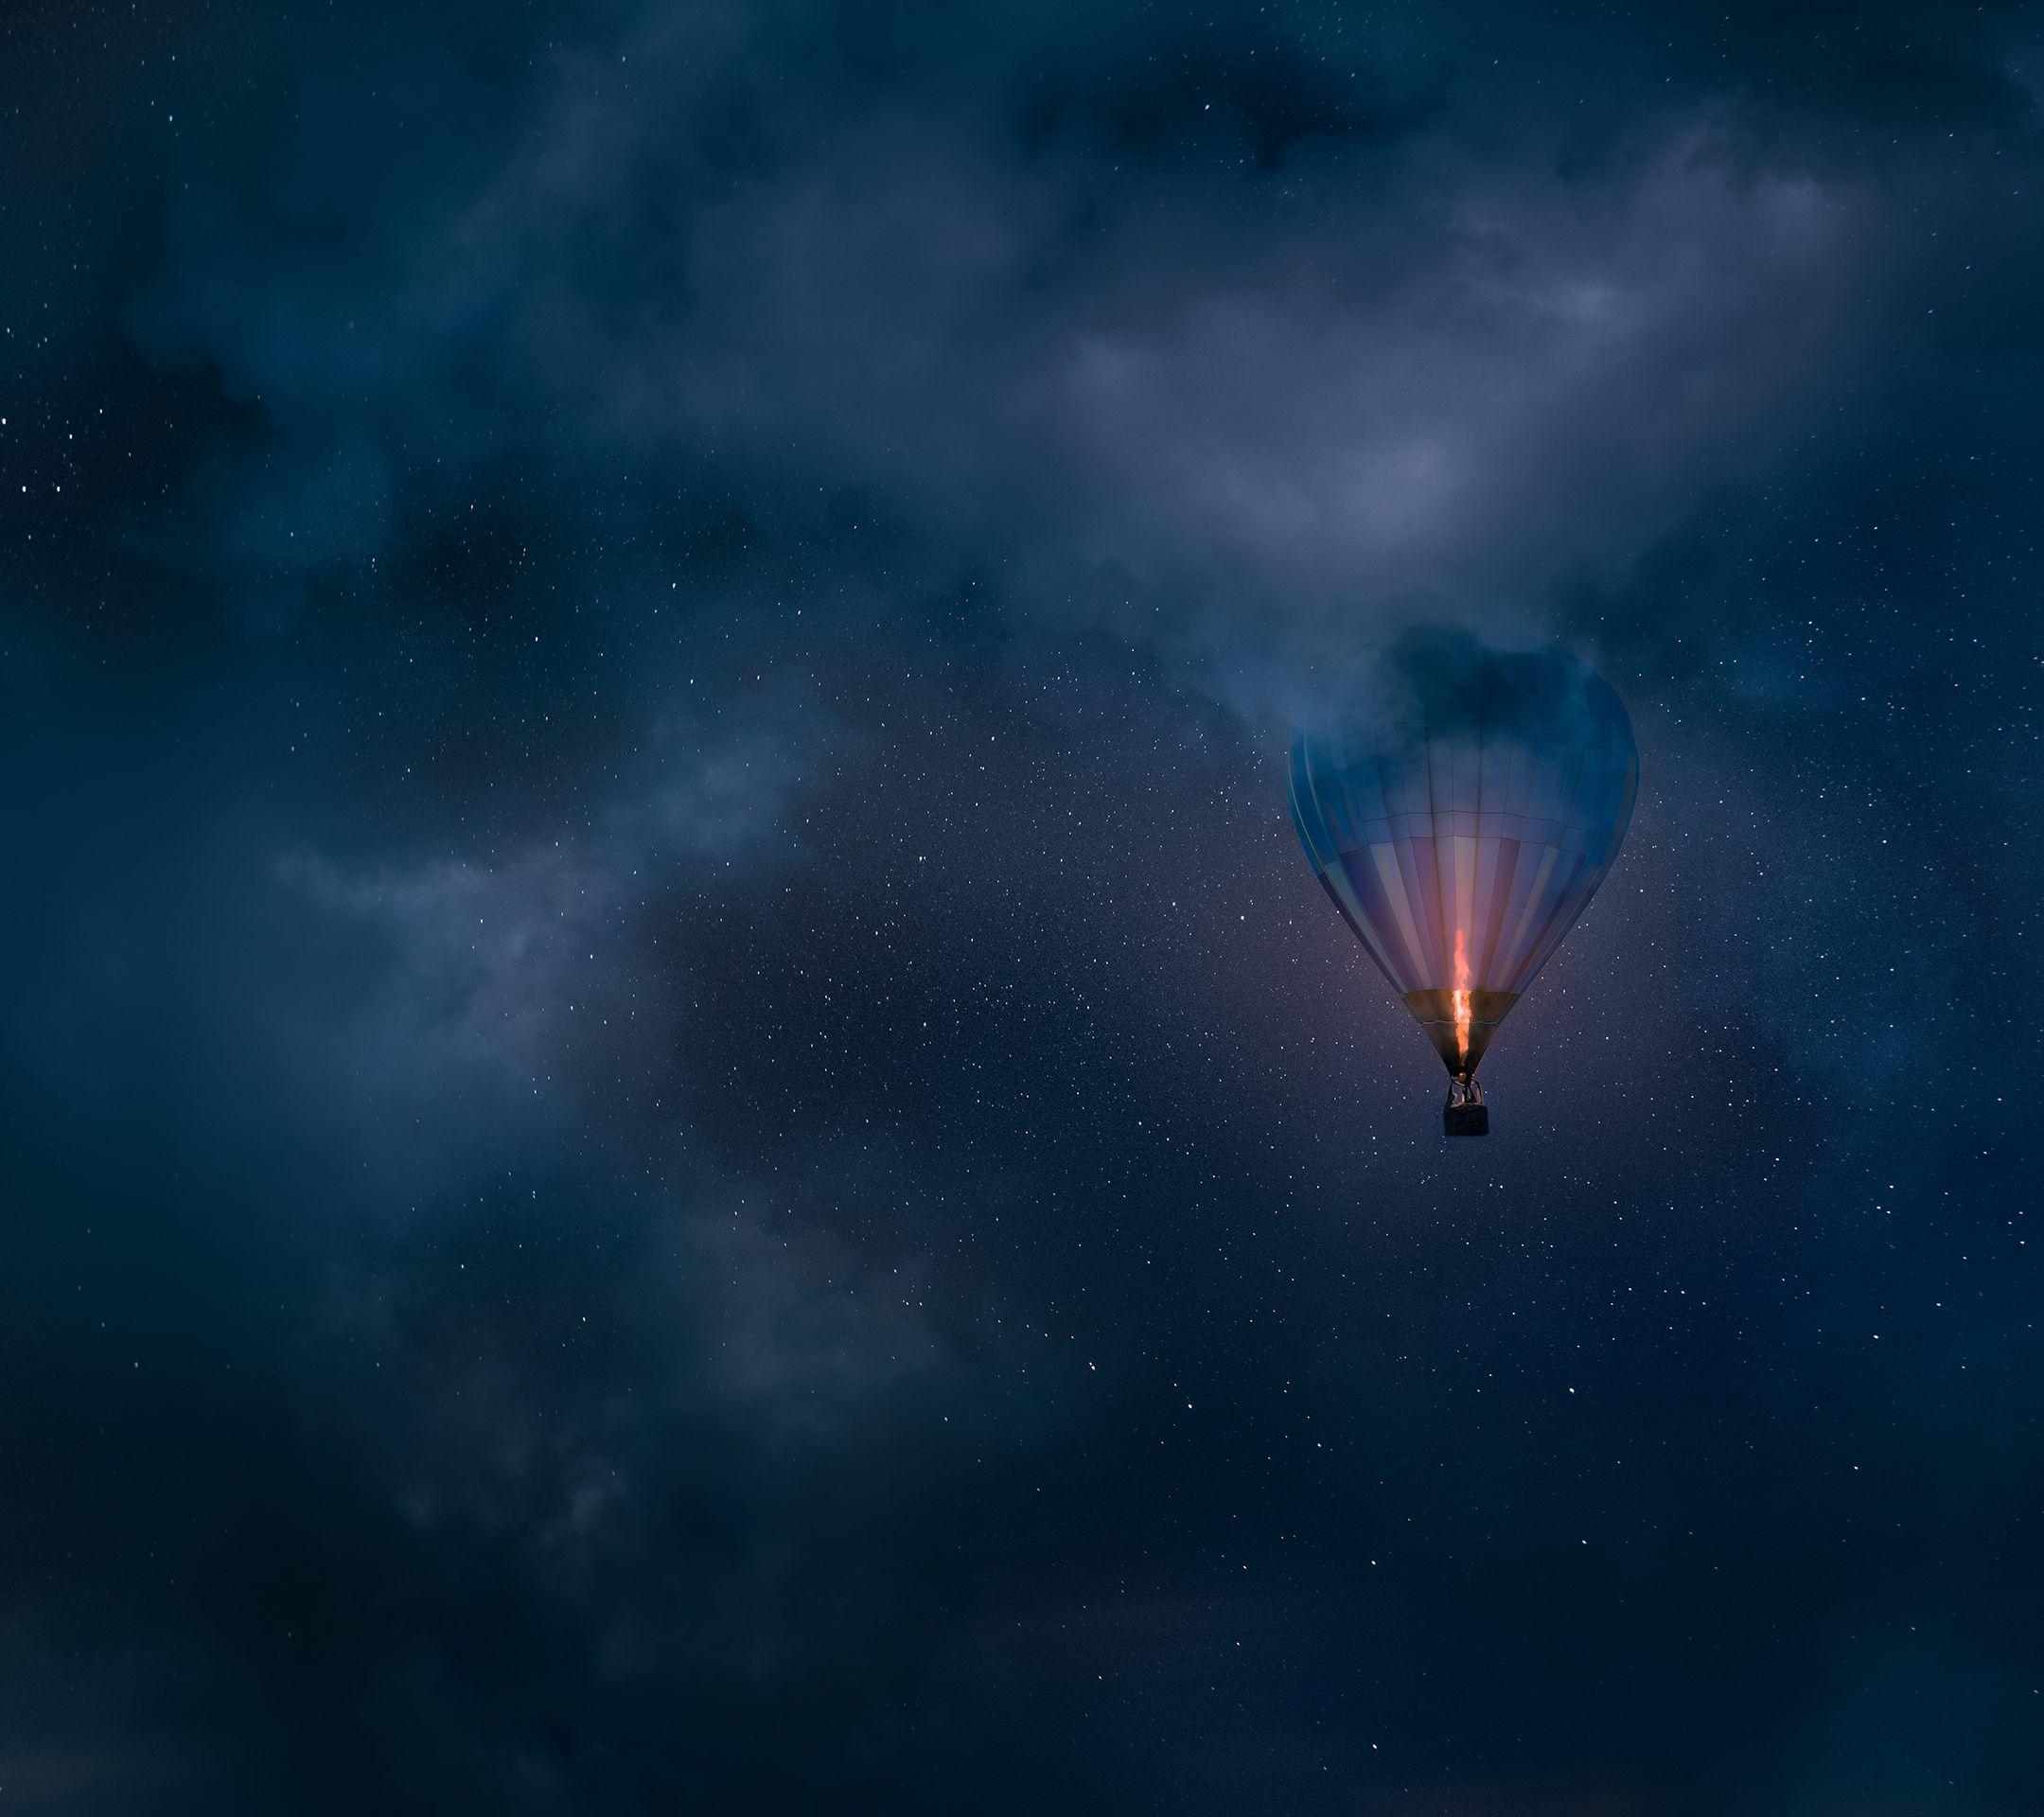 tapete nokia android,himmel,heißluftballon fahren,heißluftballon,atmosphäre,blau